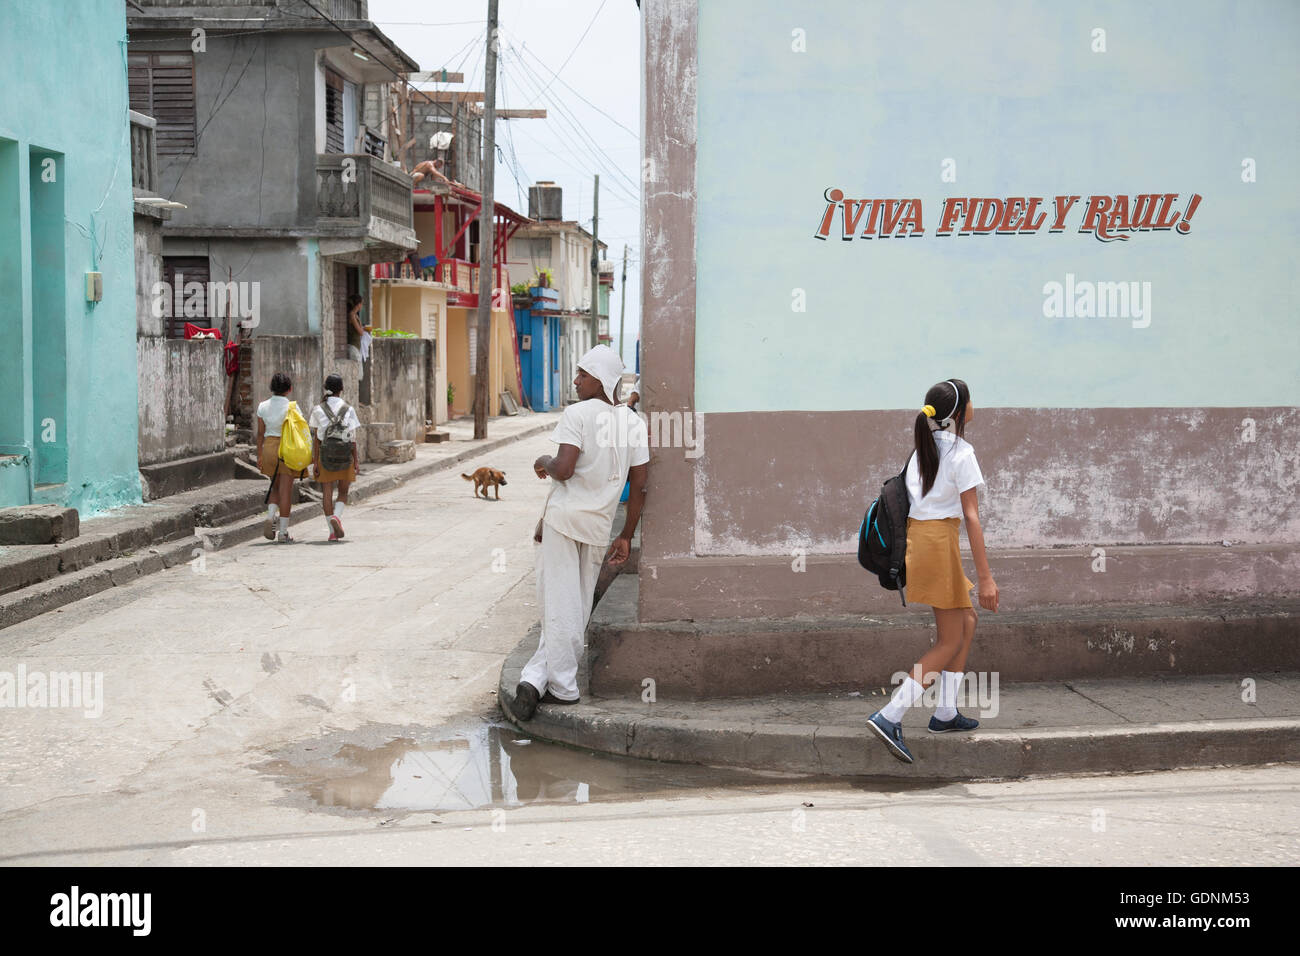 Straßenszene mit einer Pro-Castro-Brüder Slogan, Schulkinder, ein Bäcker und ein Hund in Baracoa, Kuba Stockfoto